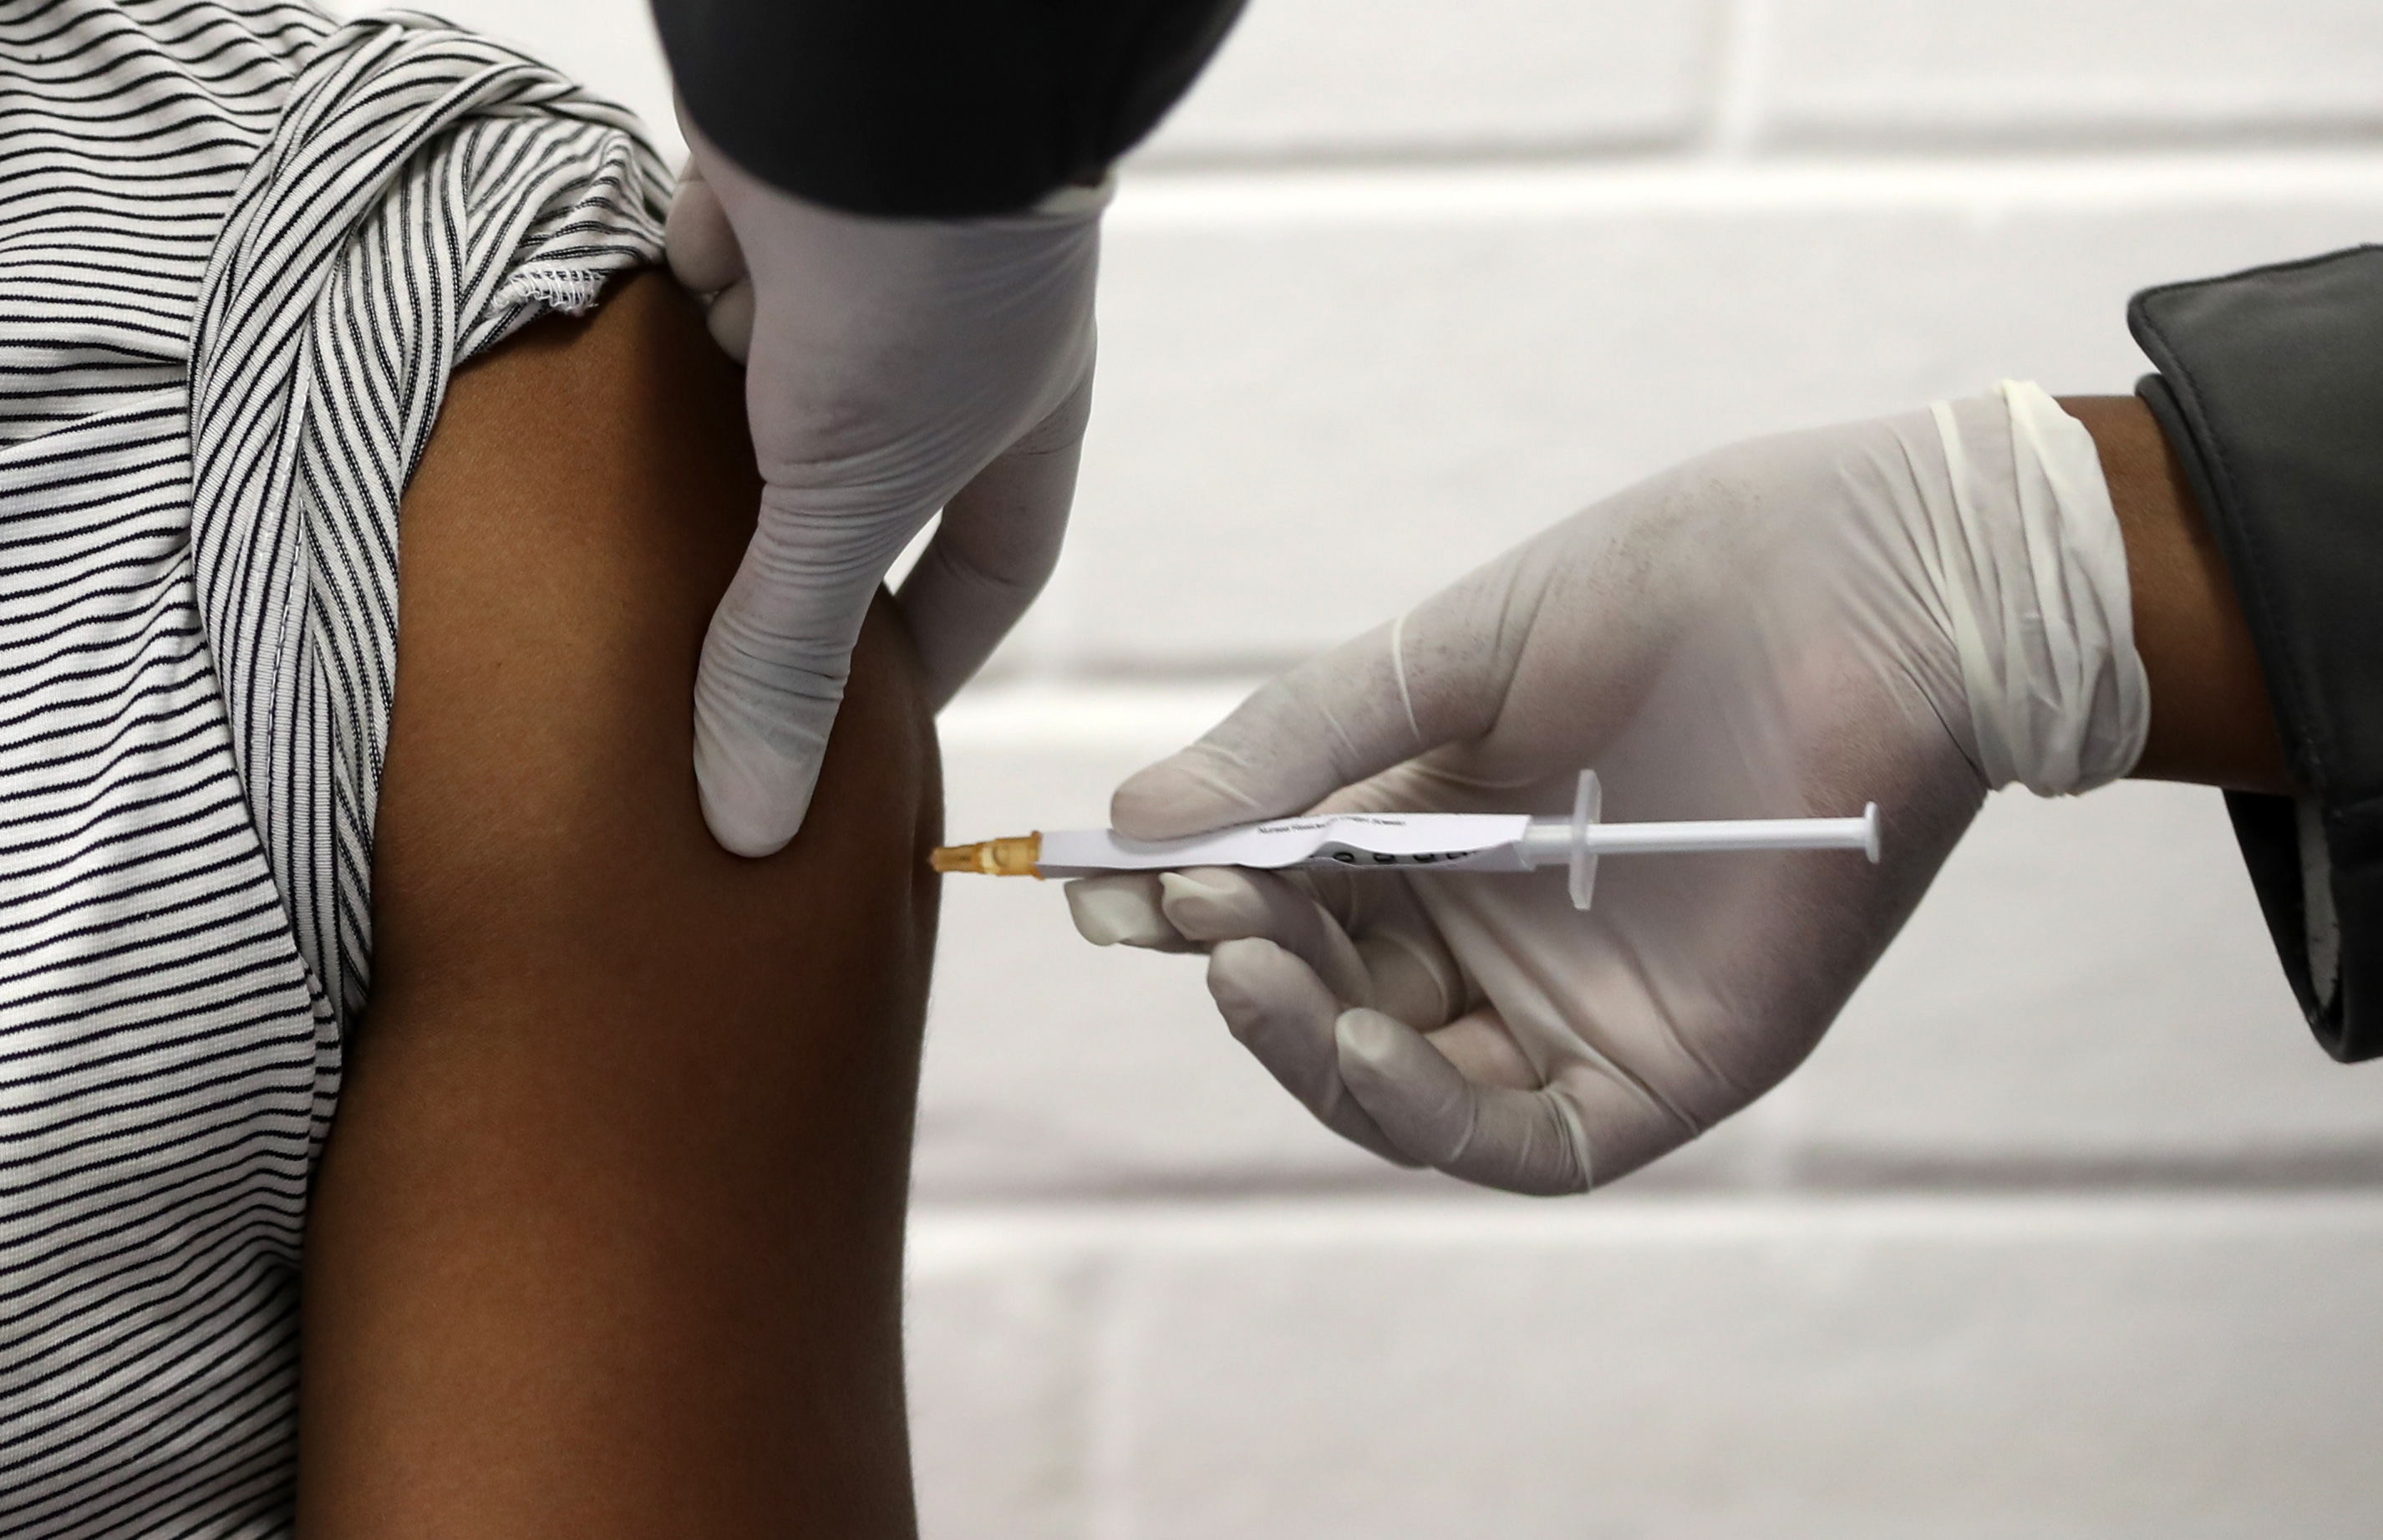 Carrera por vacuna se acelera con Latinoamérica enferma